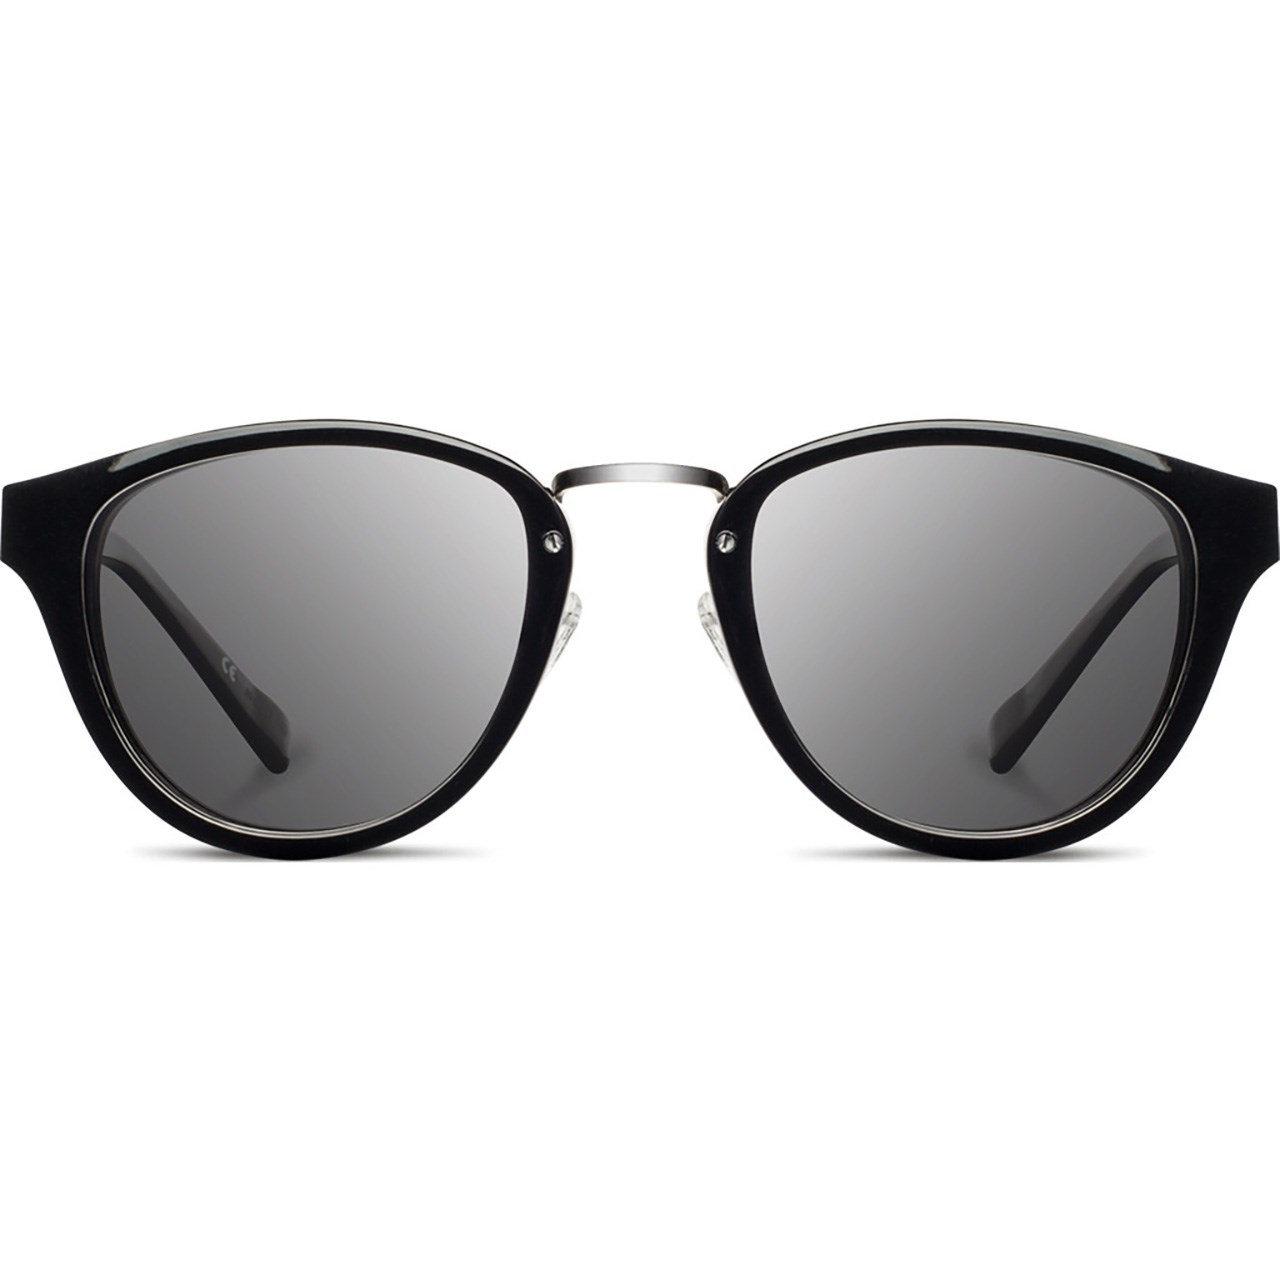 عینک آفتابی شوود سری Acetate مدل Ainsworth Black Ebony